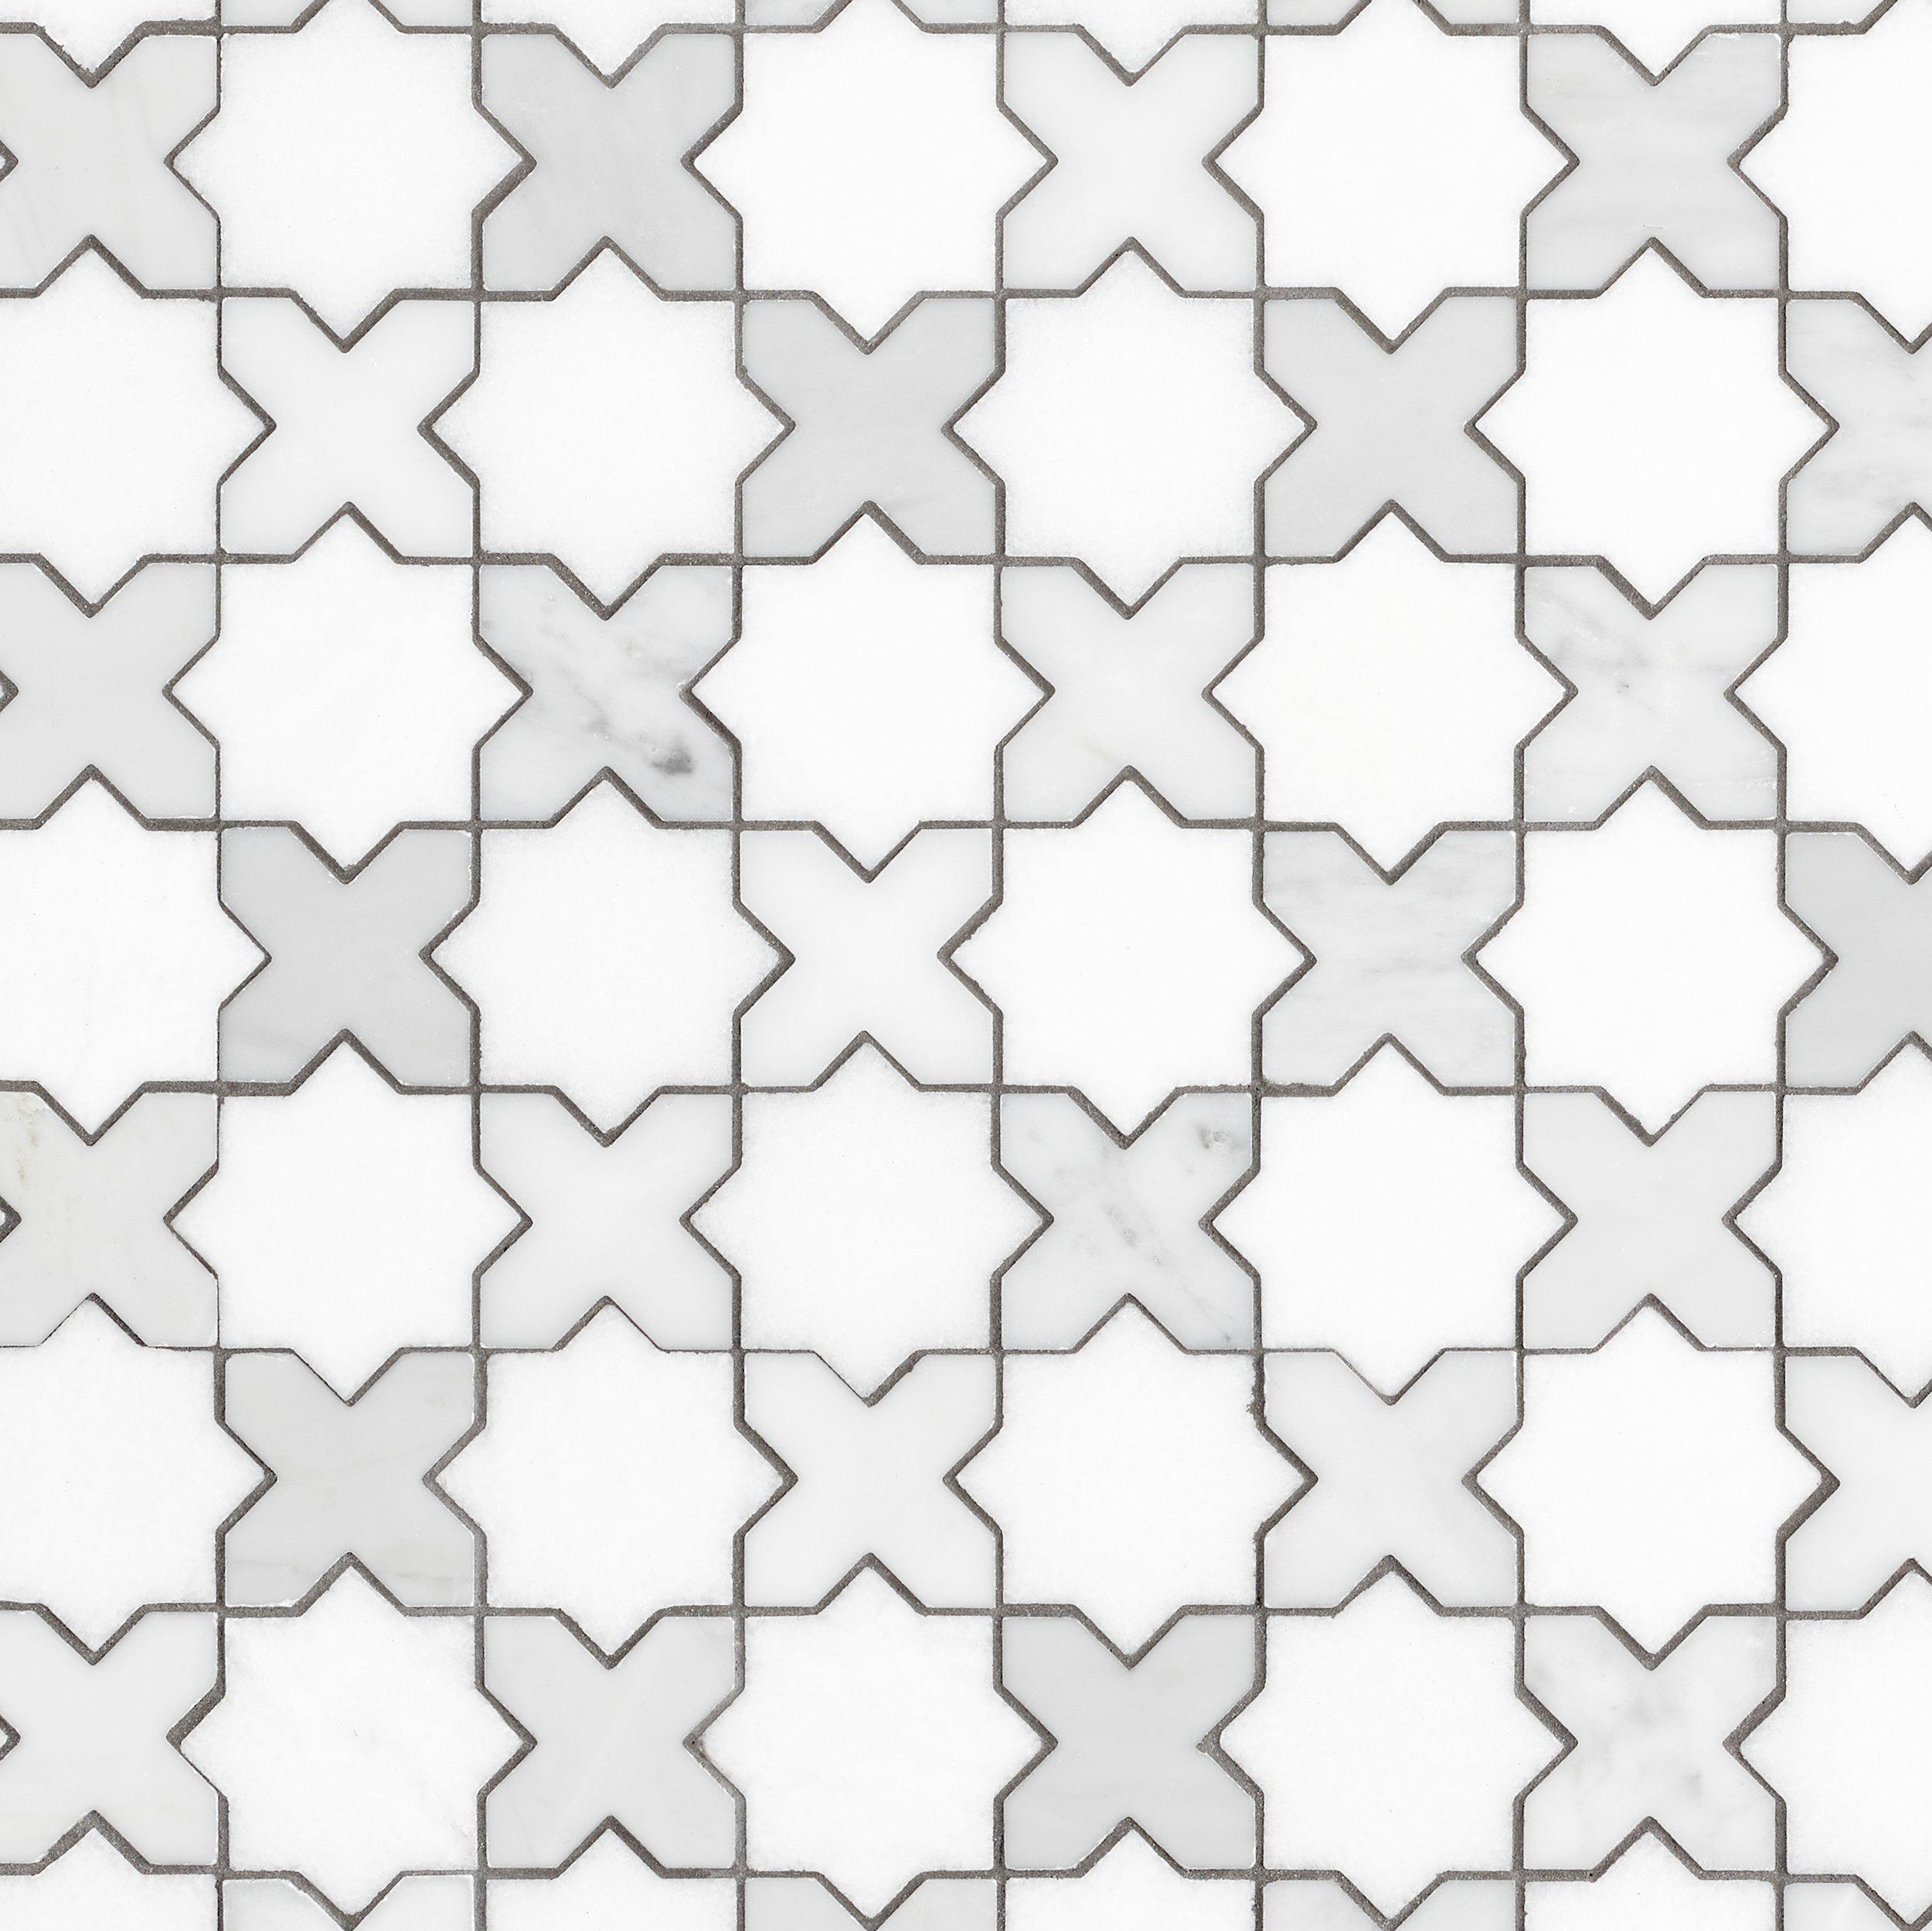 Jigsaw Bianco Carrara Thassos Marble Mosaic